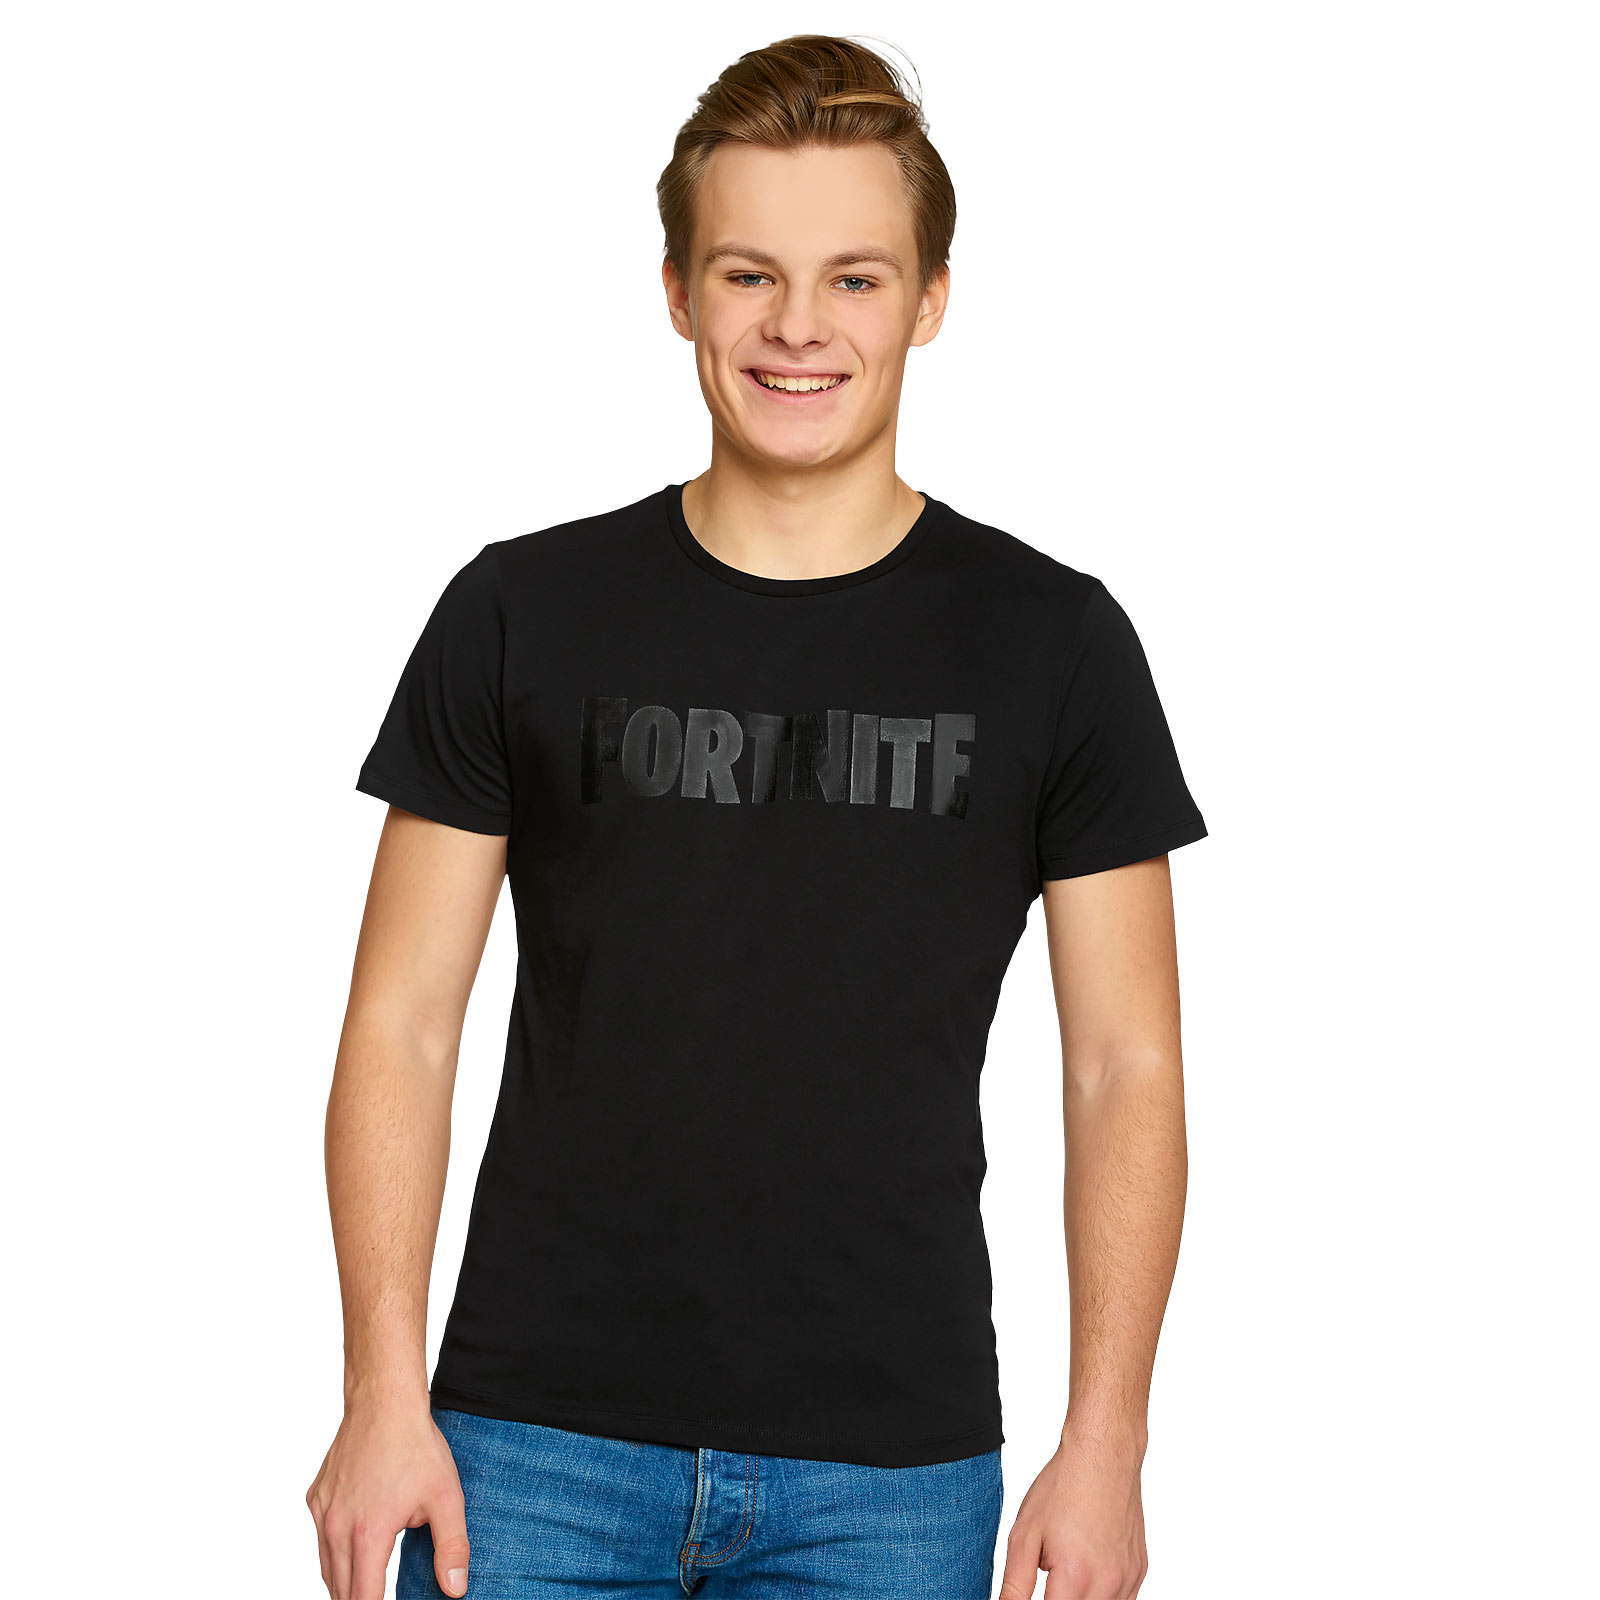 Fortnite - T-shirt logo noir